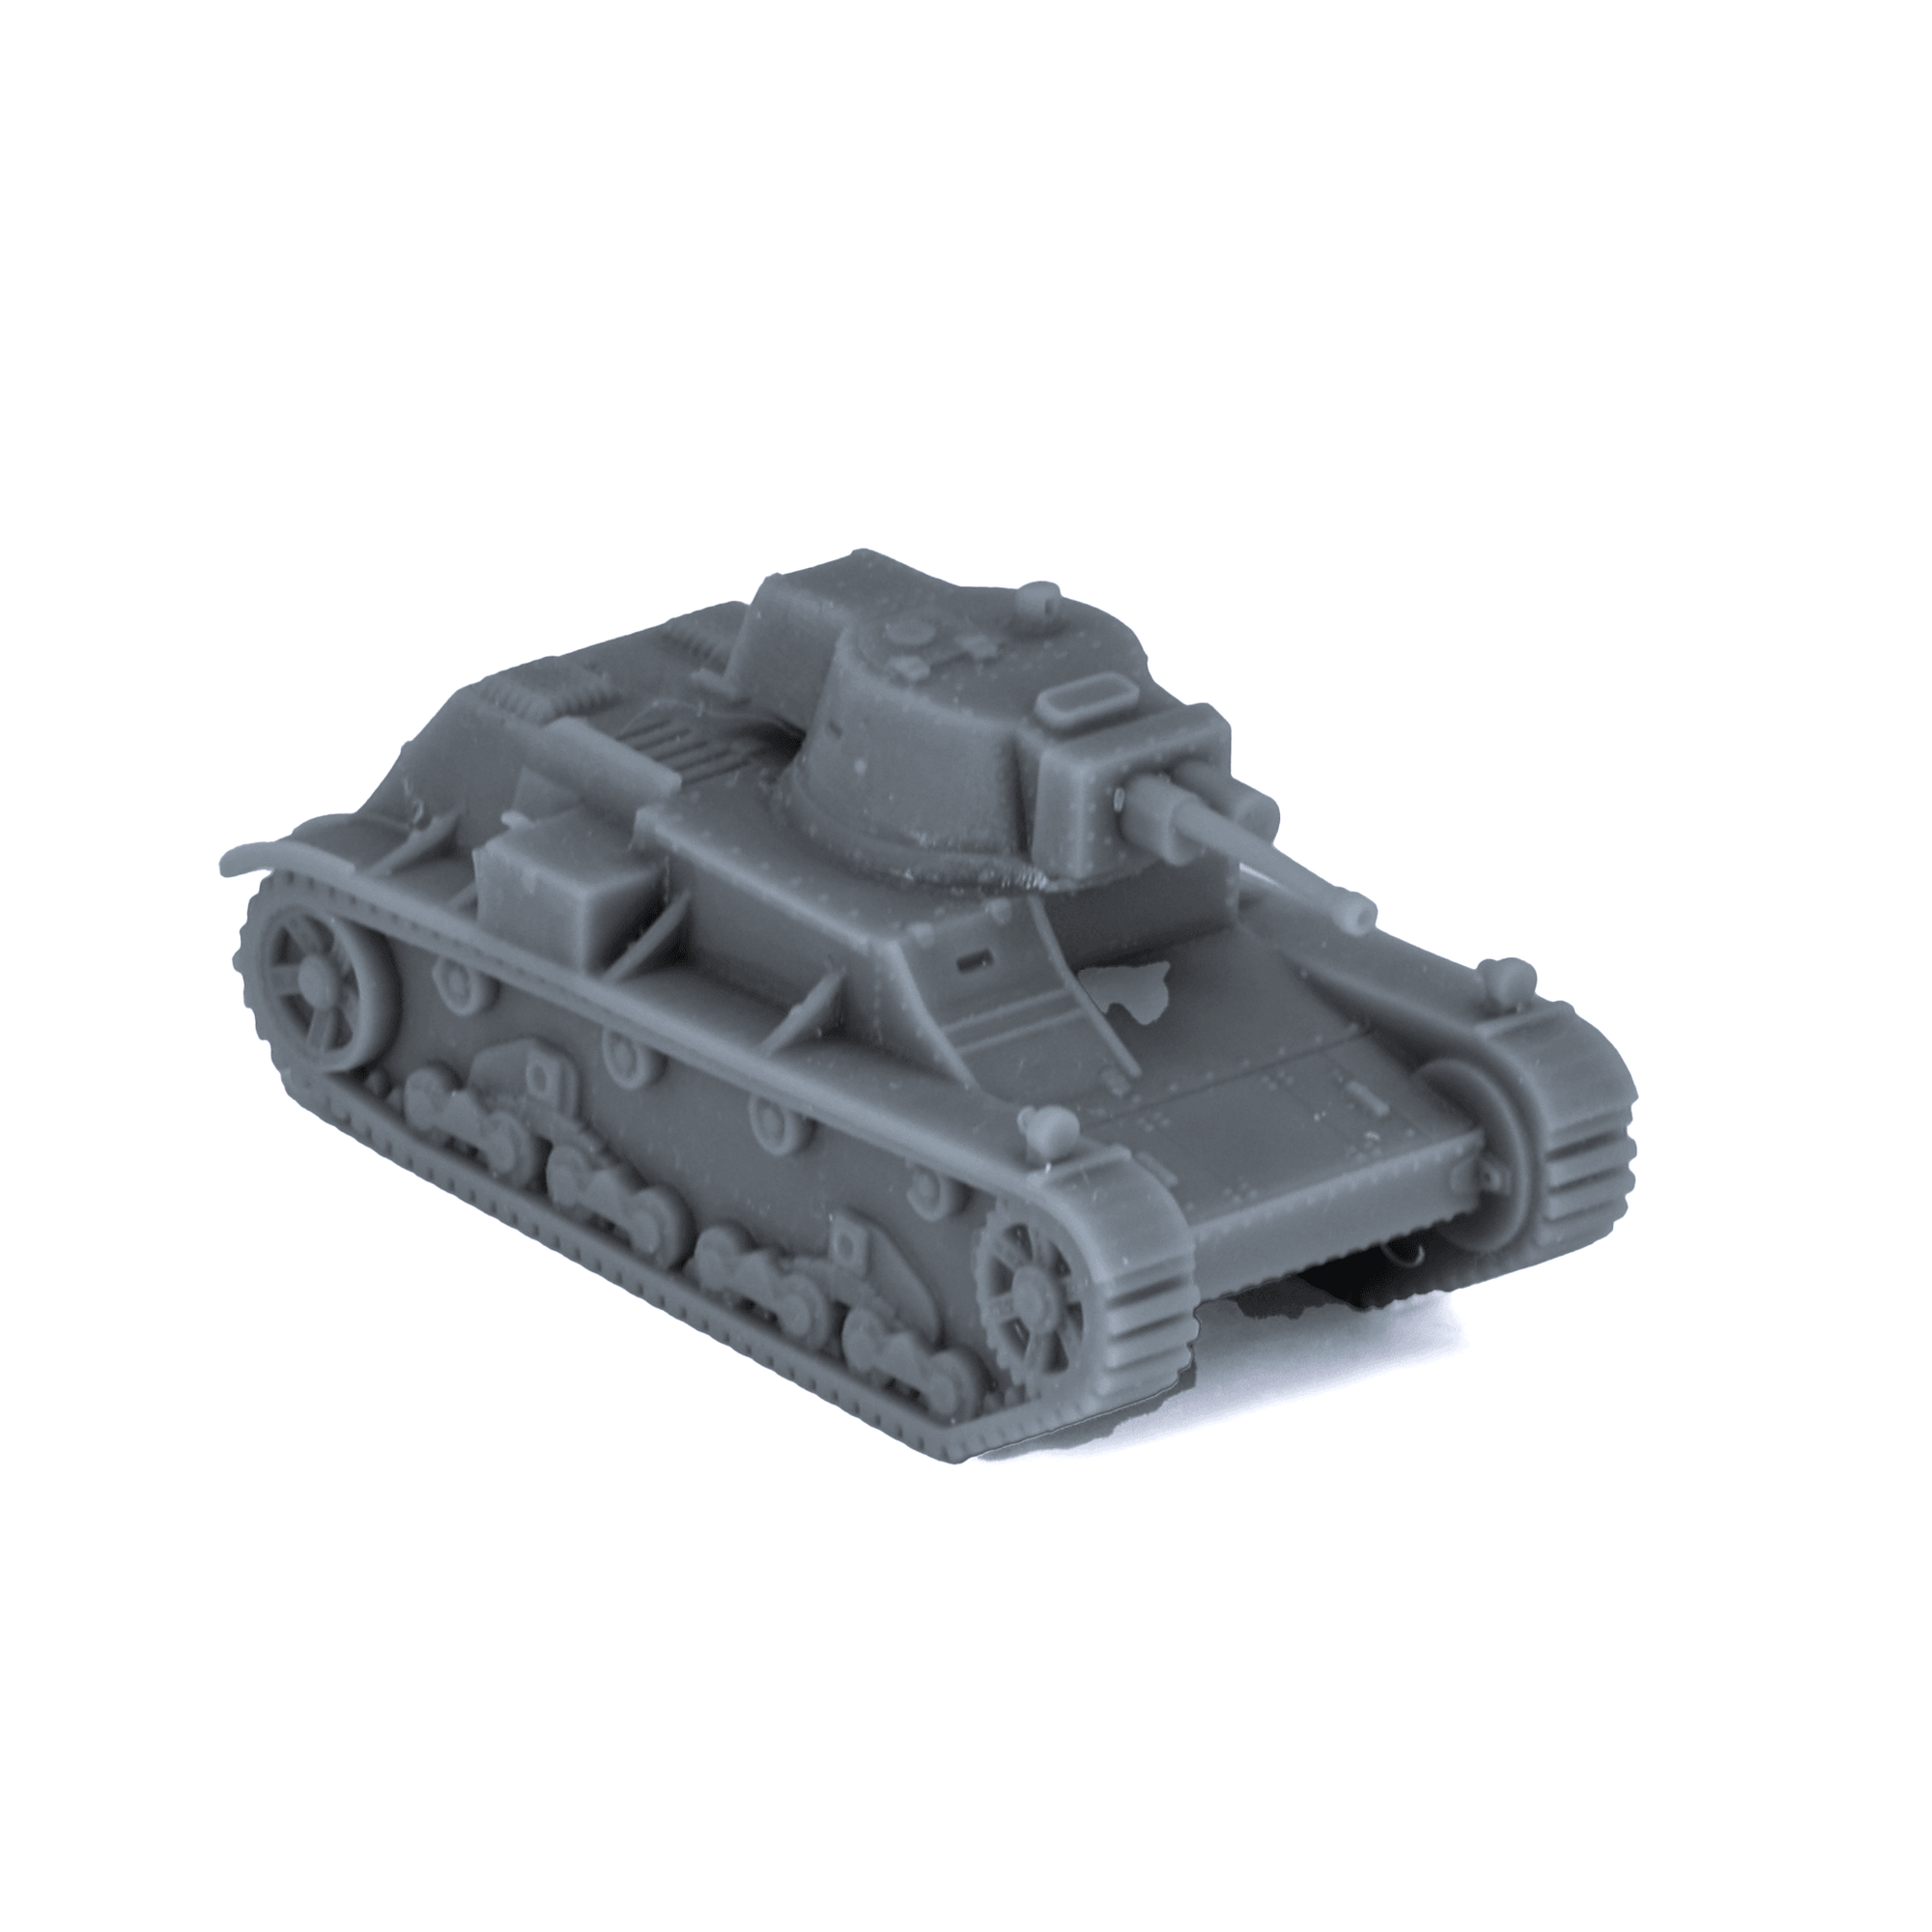 7TPJW Polish Light Tank - Alternate Ending Games